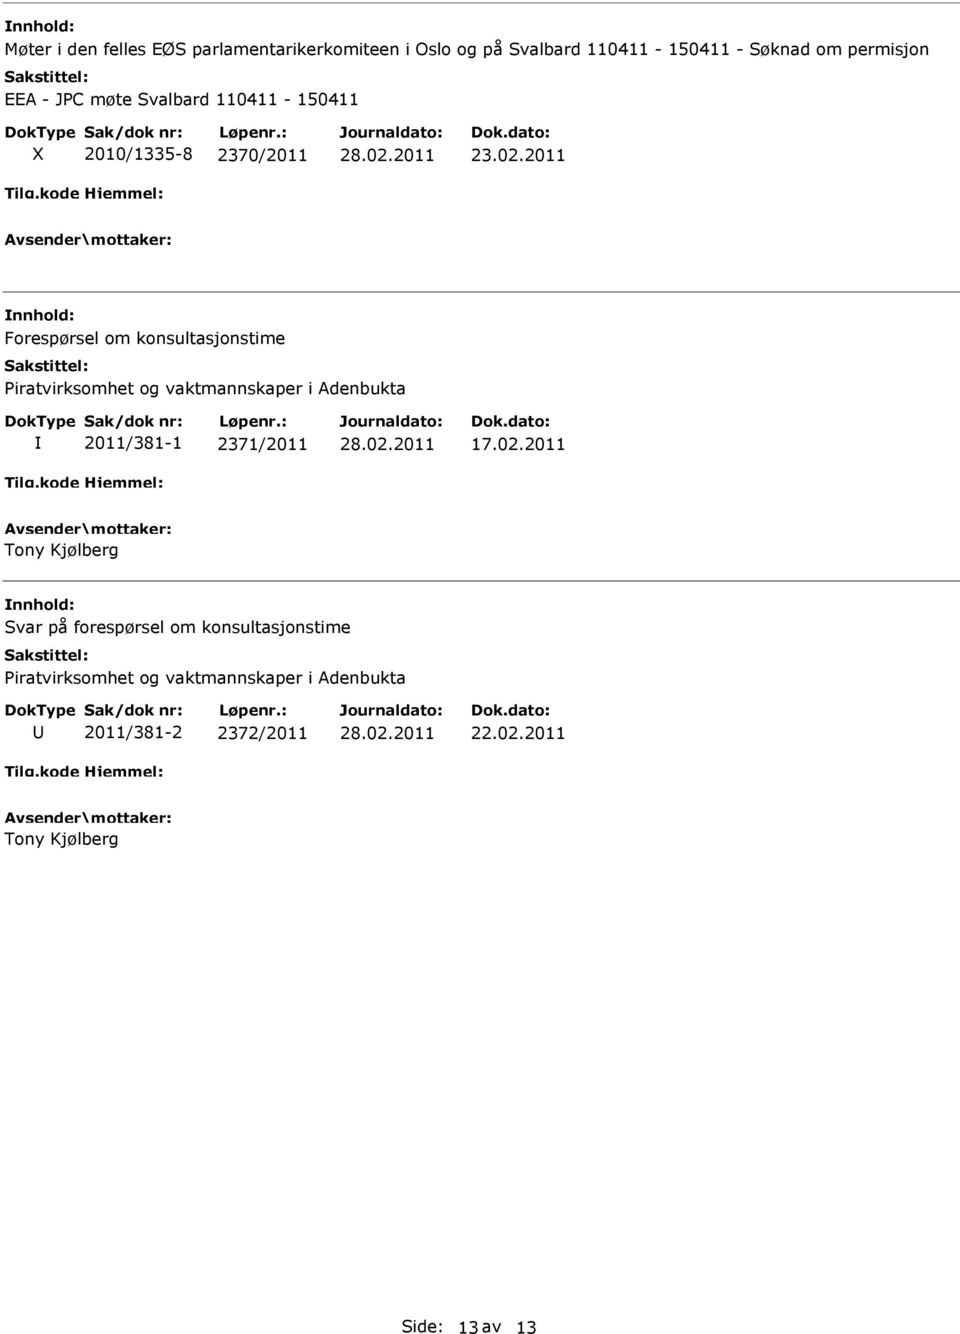 2011 Forespørsel om konsultasjonstime Piratvirksomhet og vaktmannskaper i Adenbukta 2011/381-1 2371/2011 17.02.